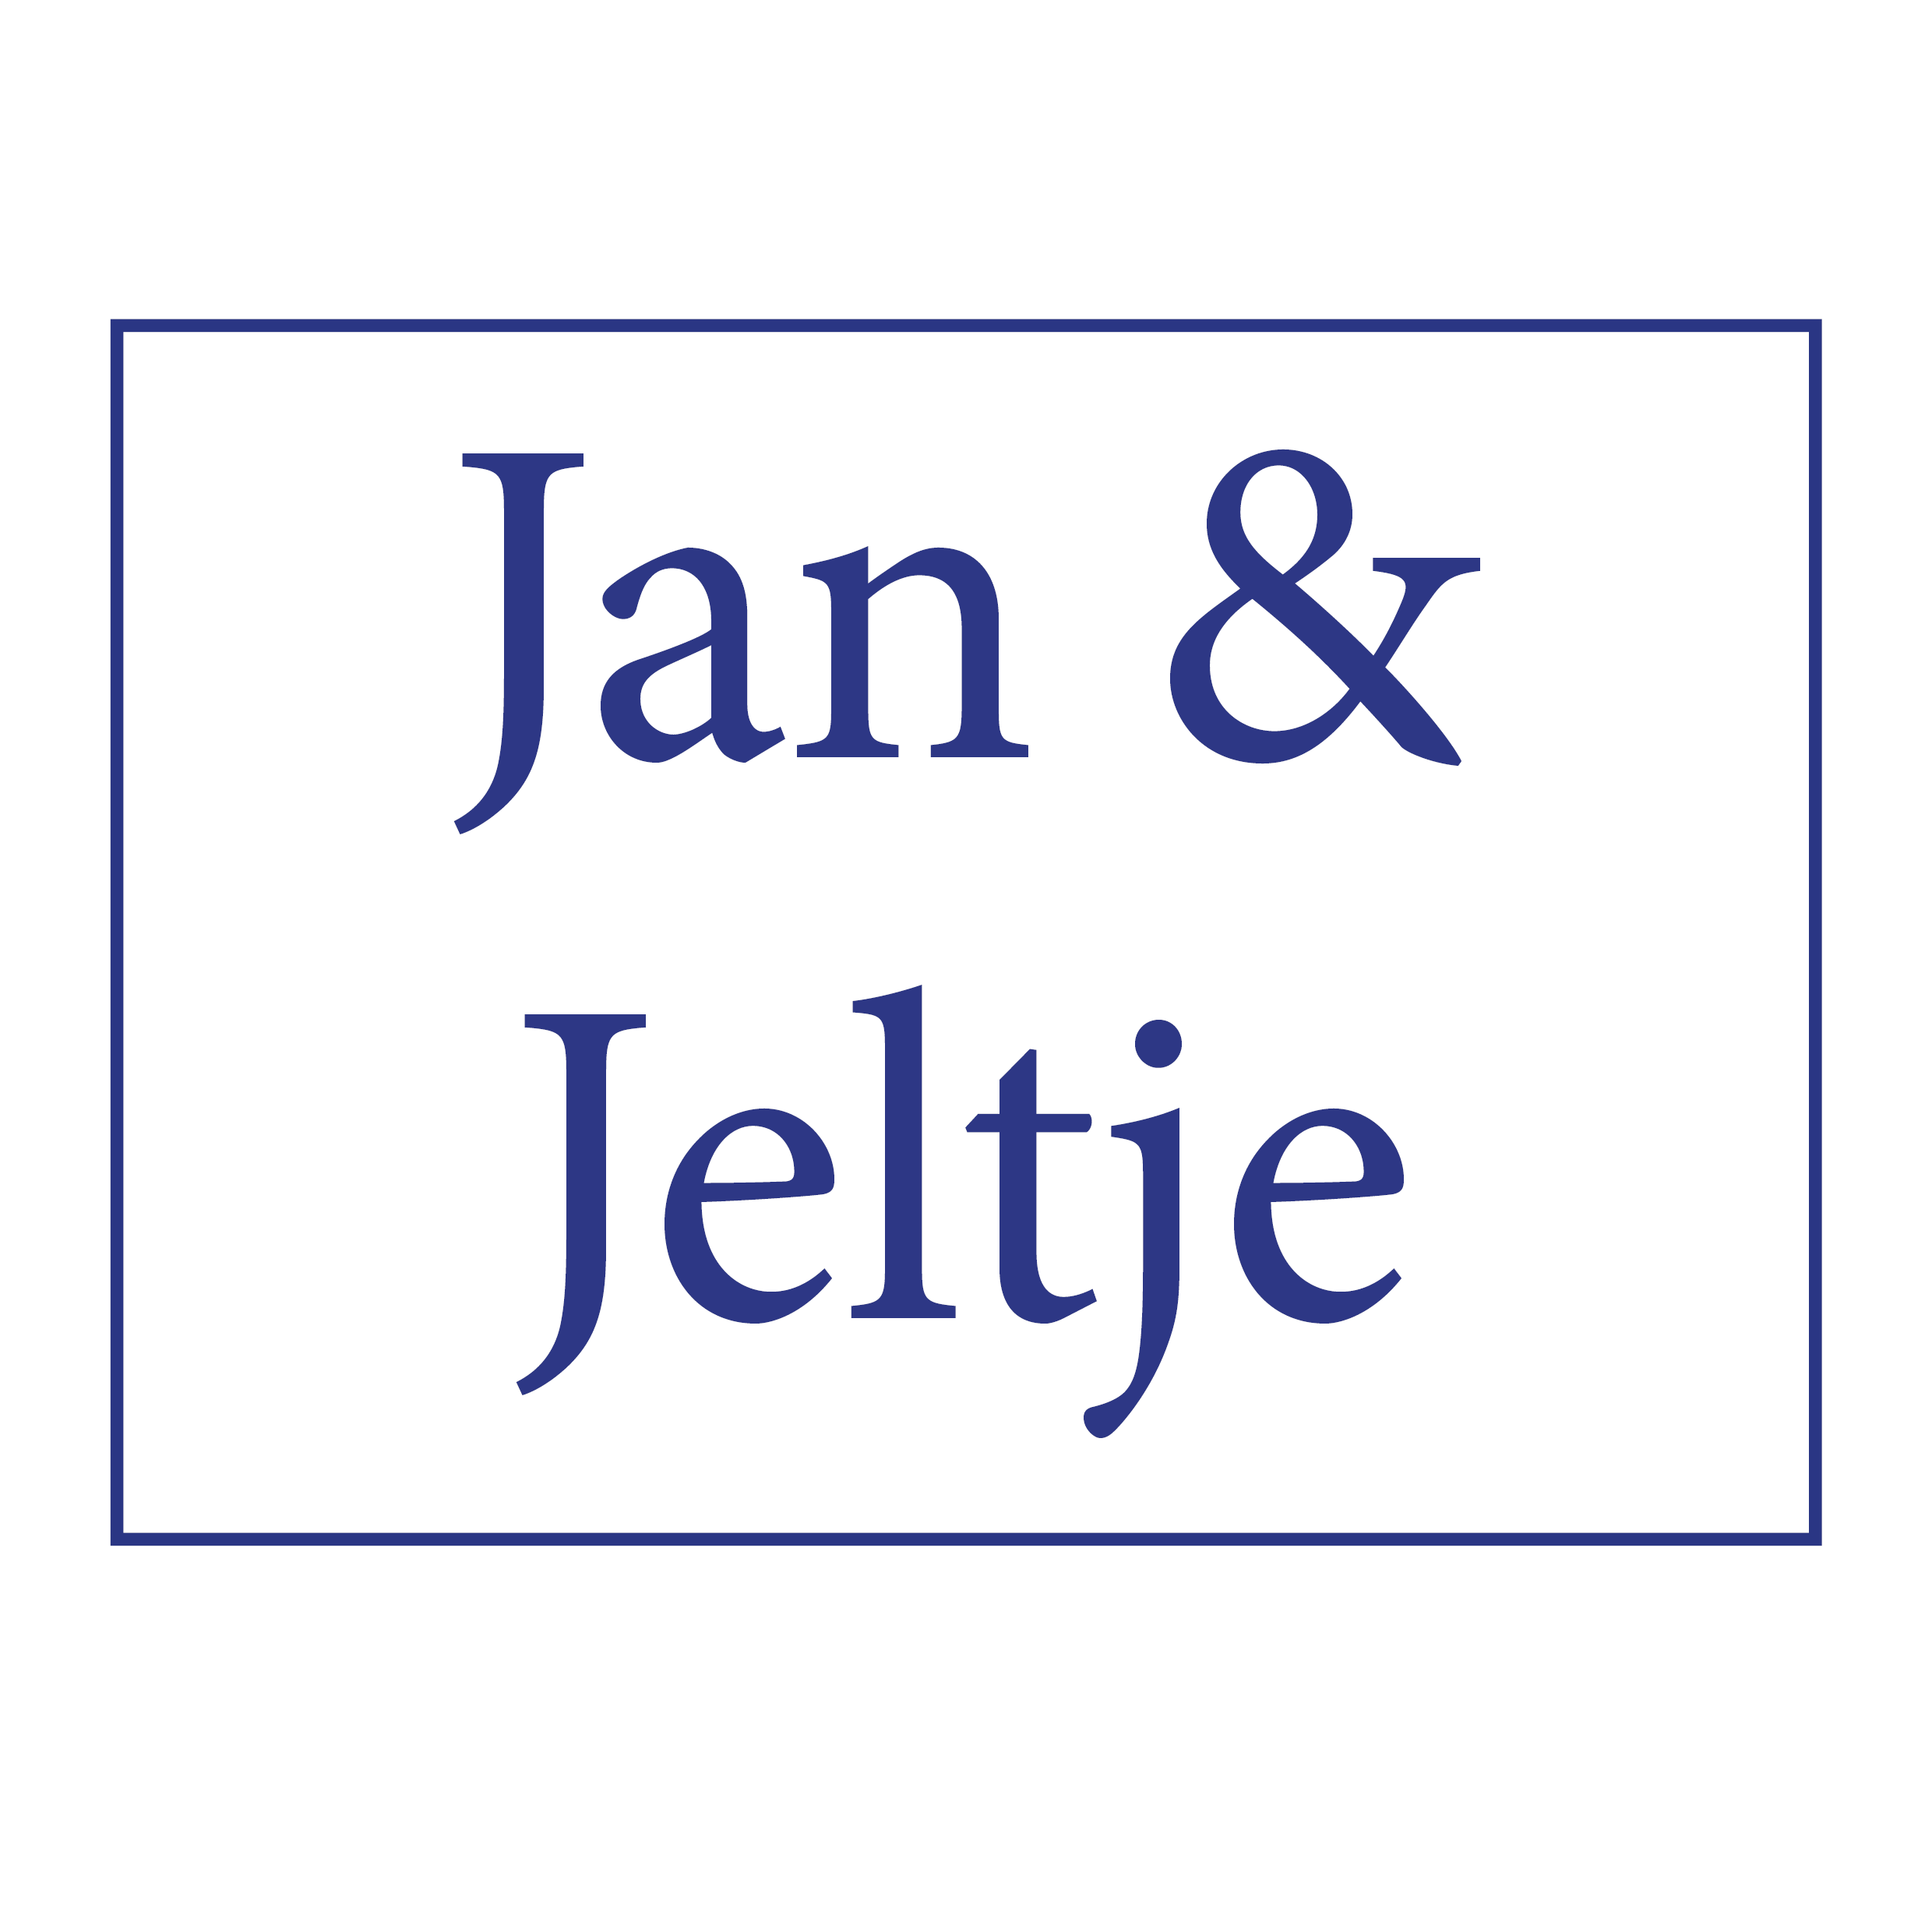 Jan & Jeltje